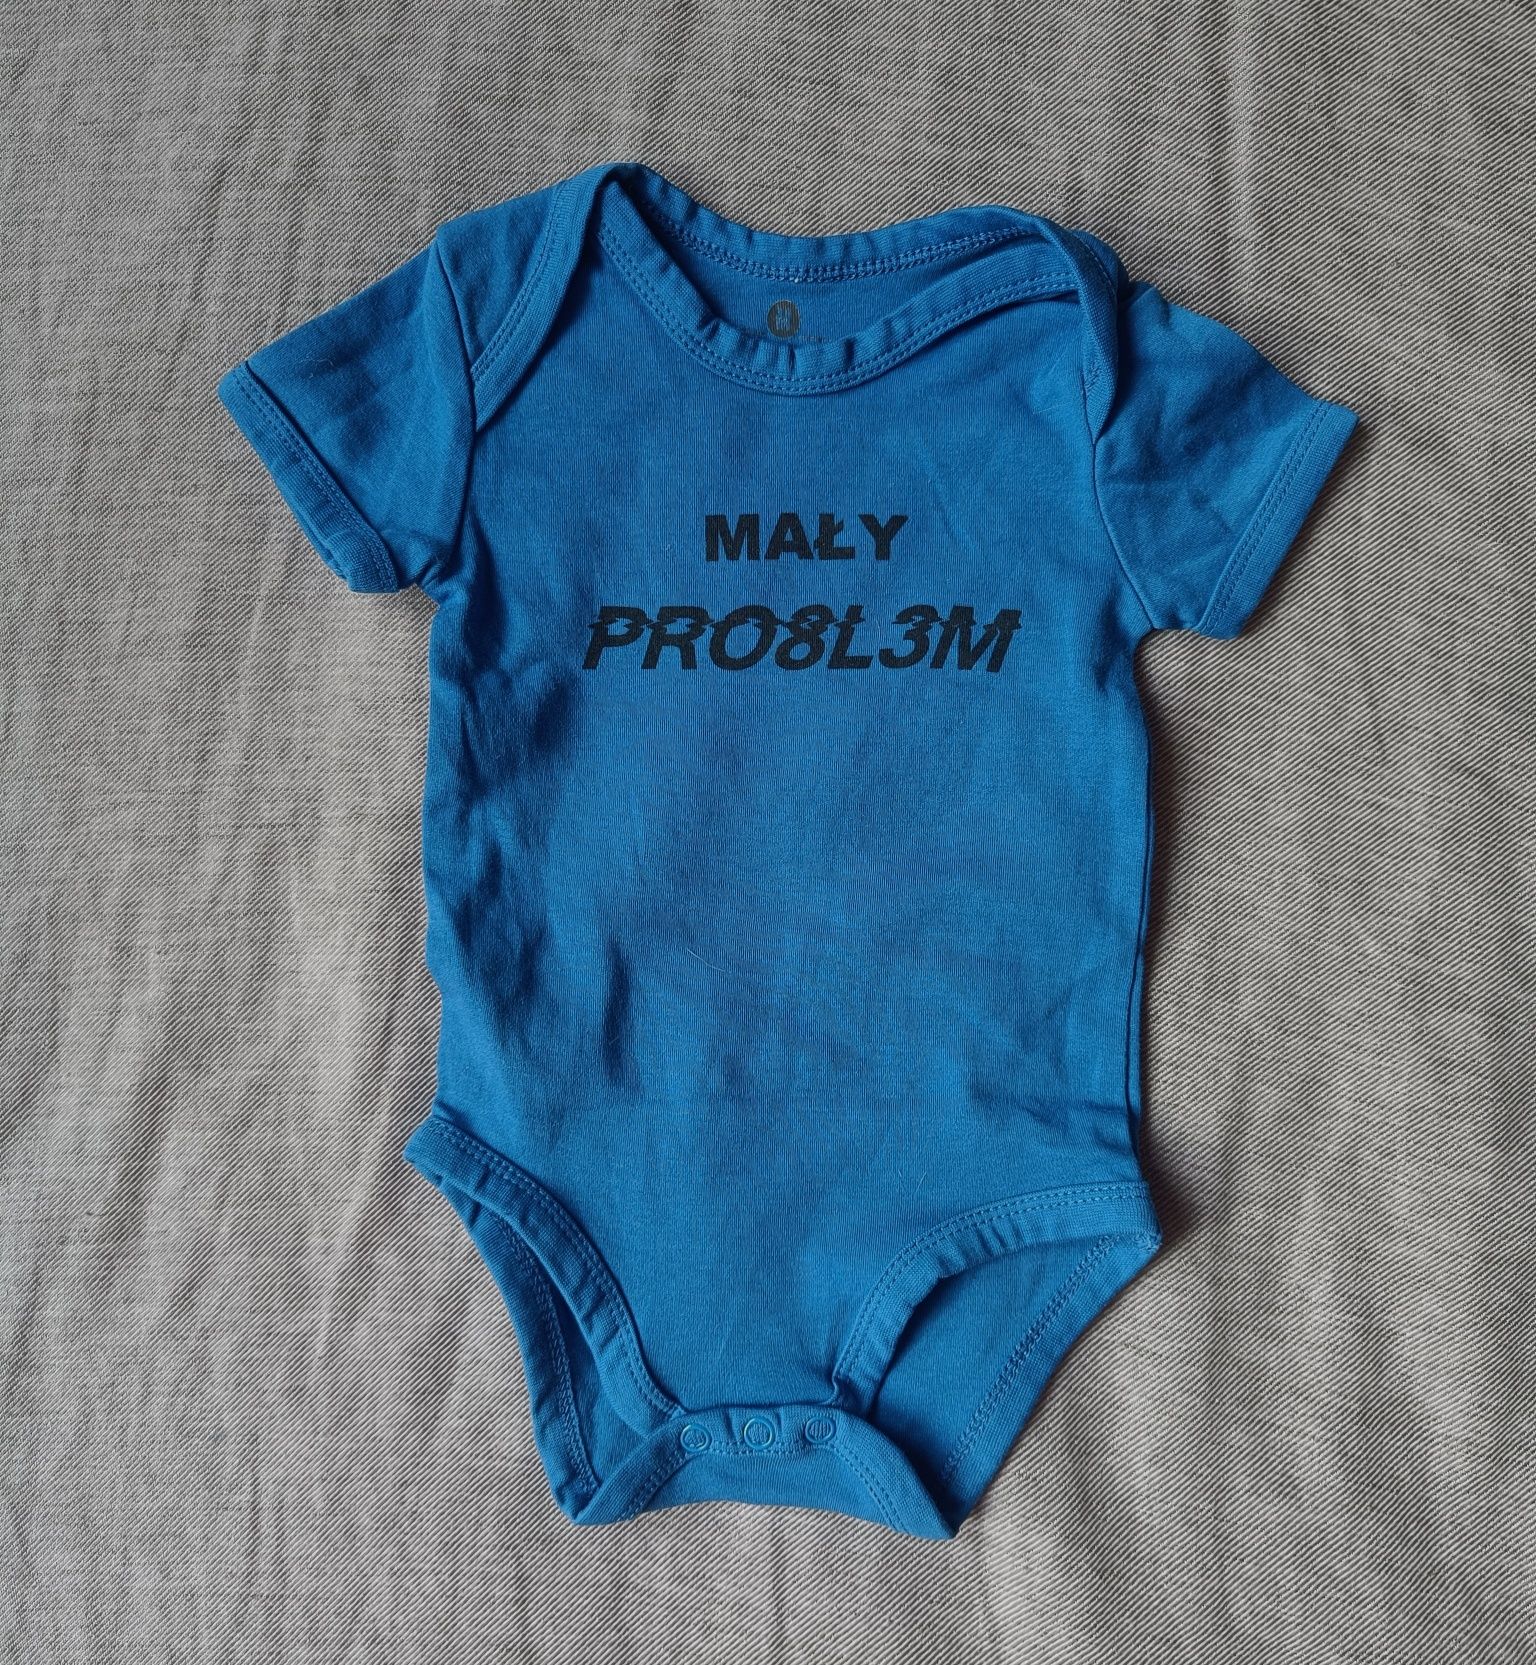 Body niemowlęce 'maly PRO8L3M' 68